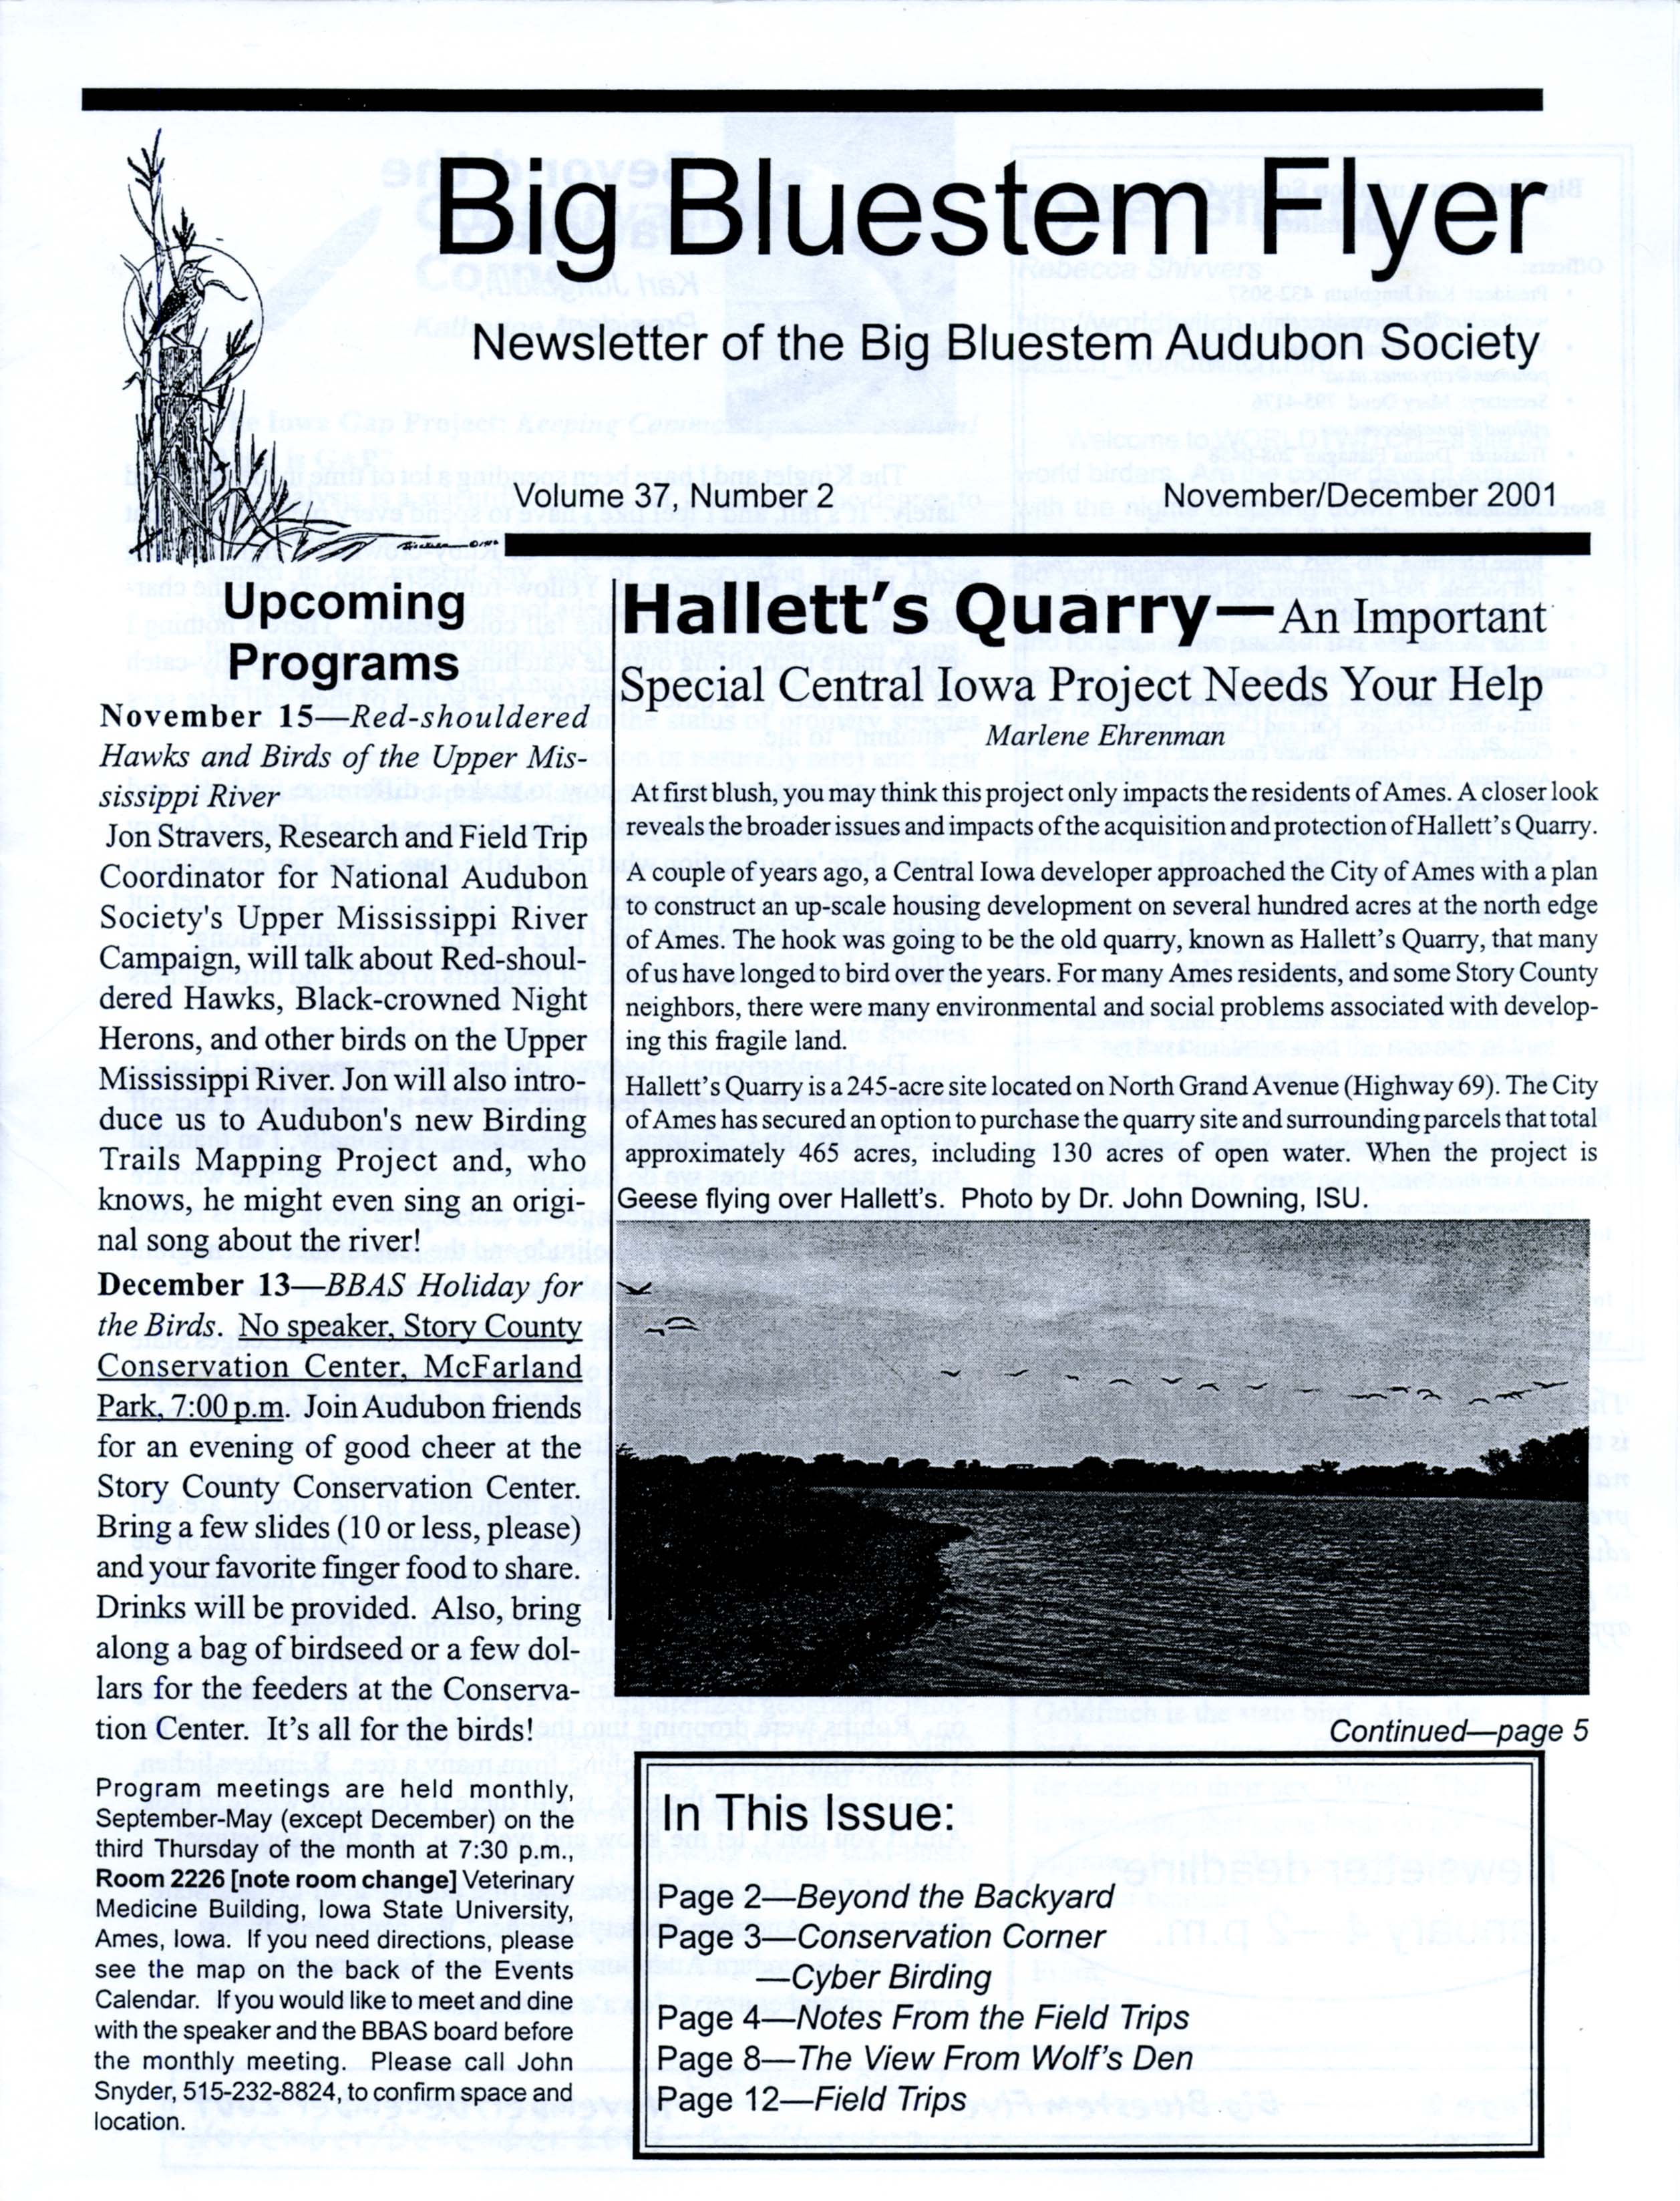 Big Bluestem Flyer, Volume 37, Number 2, November/December 2001